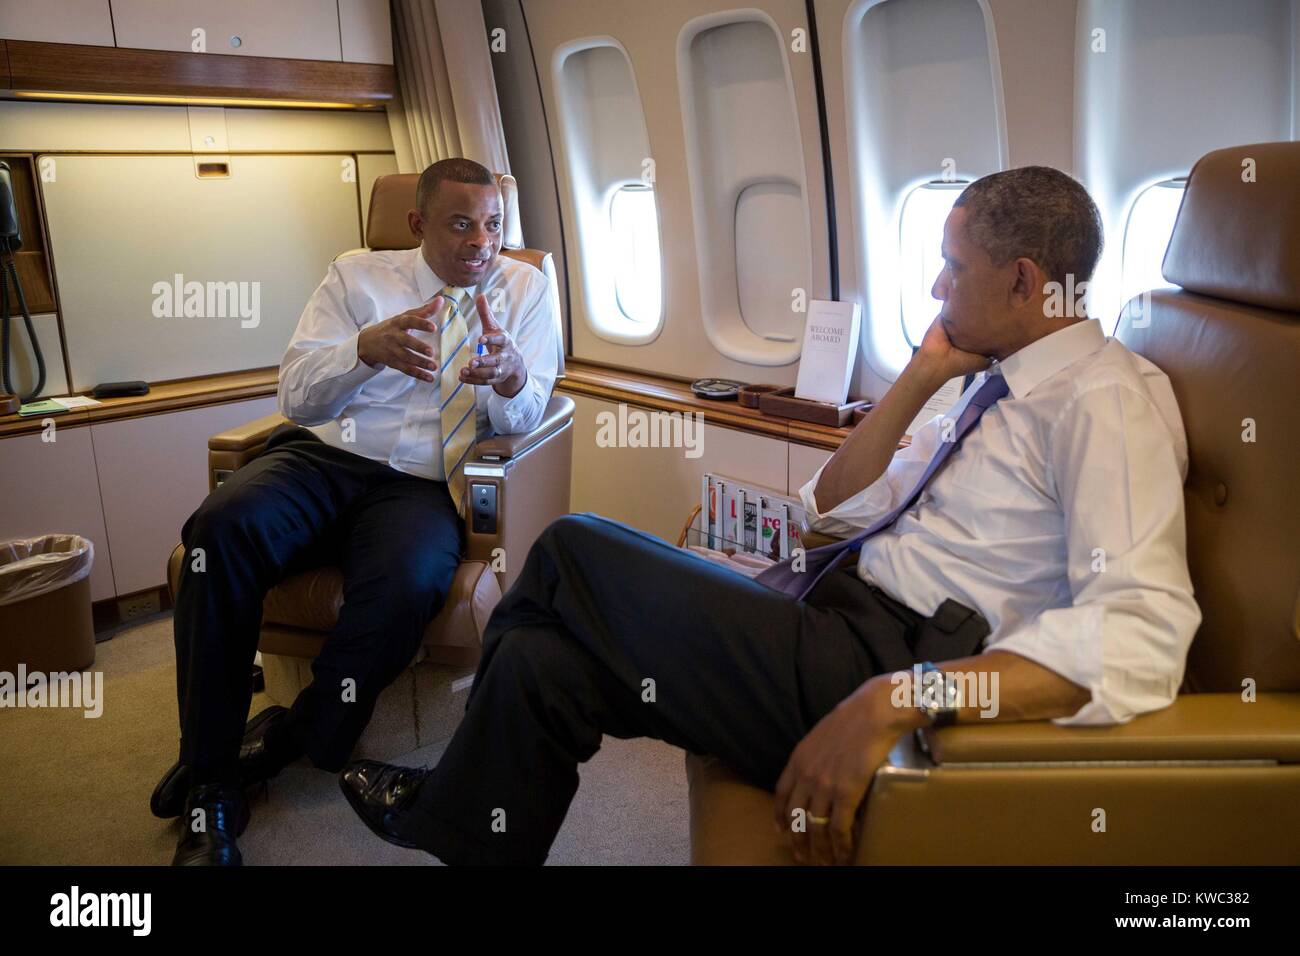 Präsident Barack Obama mit dem Transport Sec. Anthony Foxx. Sie sind an Bord der Air Force One auf dem Flug nach Jacksonville, Florida, 25. Juli 2013. (BSLOC 2015 13 246) Stockfoto